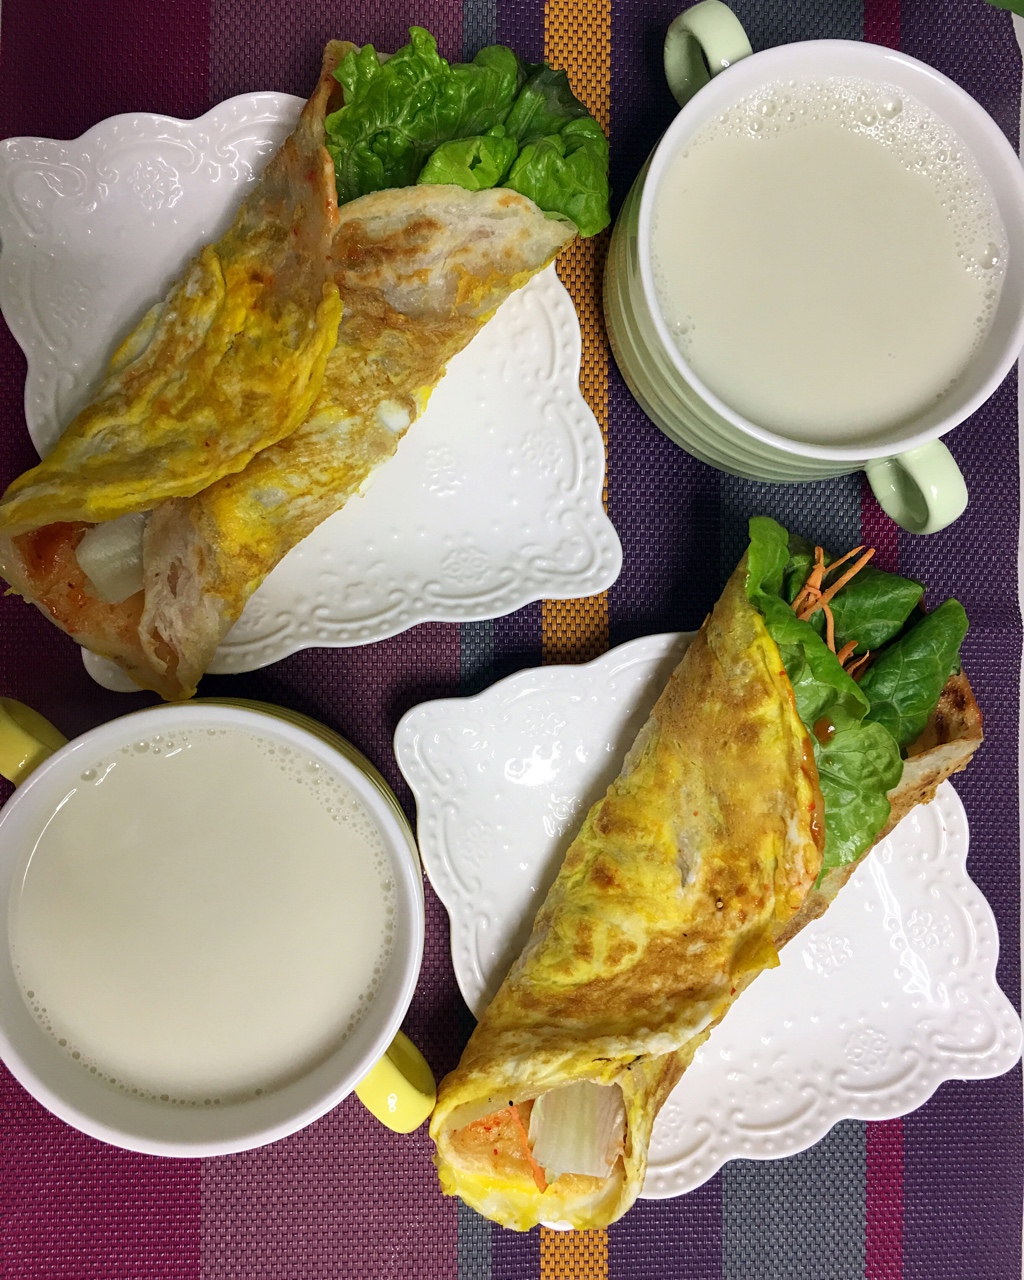 DAY 12 姜香生菜火腿肠卷饼 + 麻油煎蛋 + 豆浆